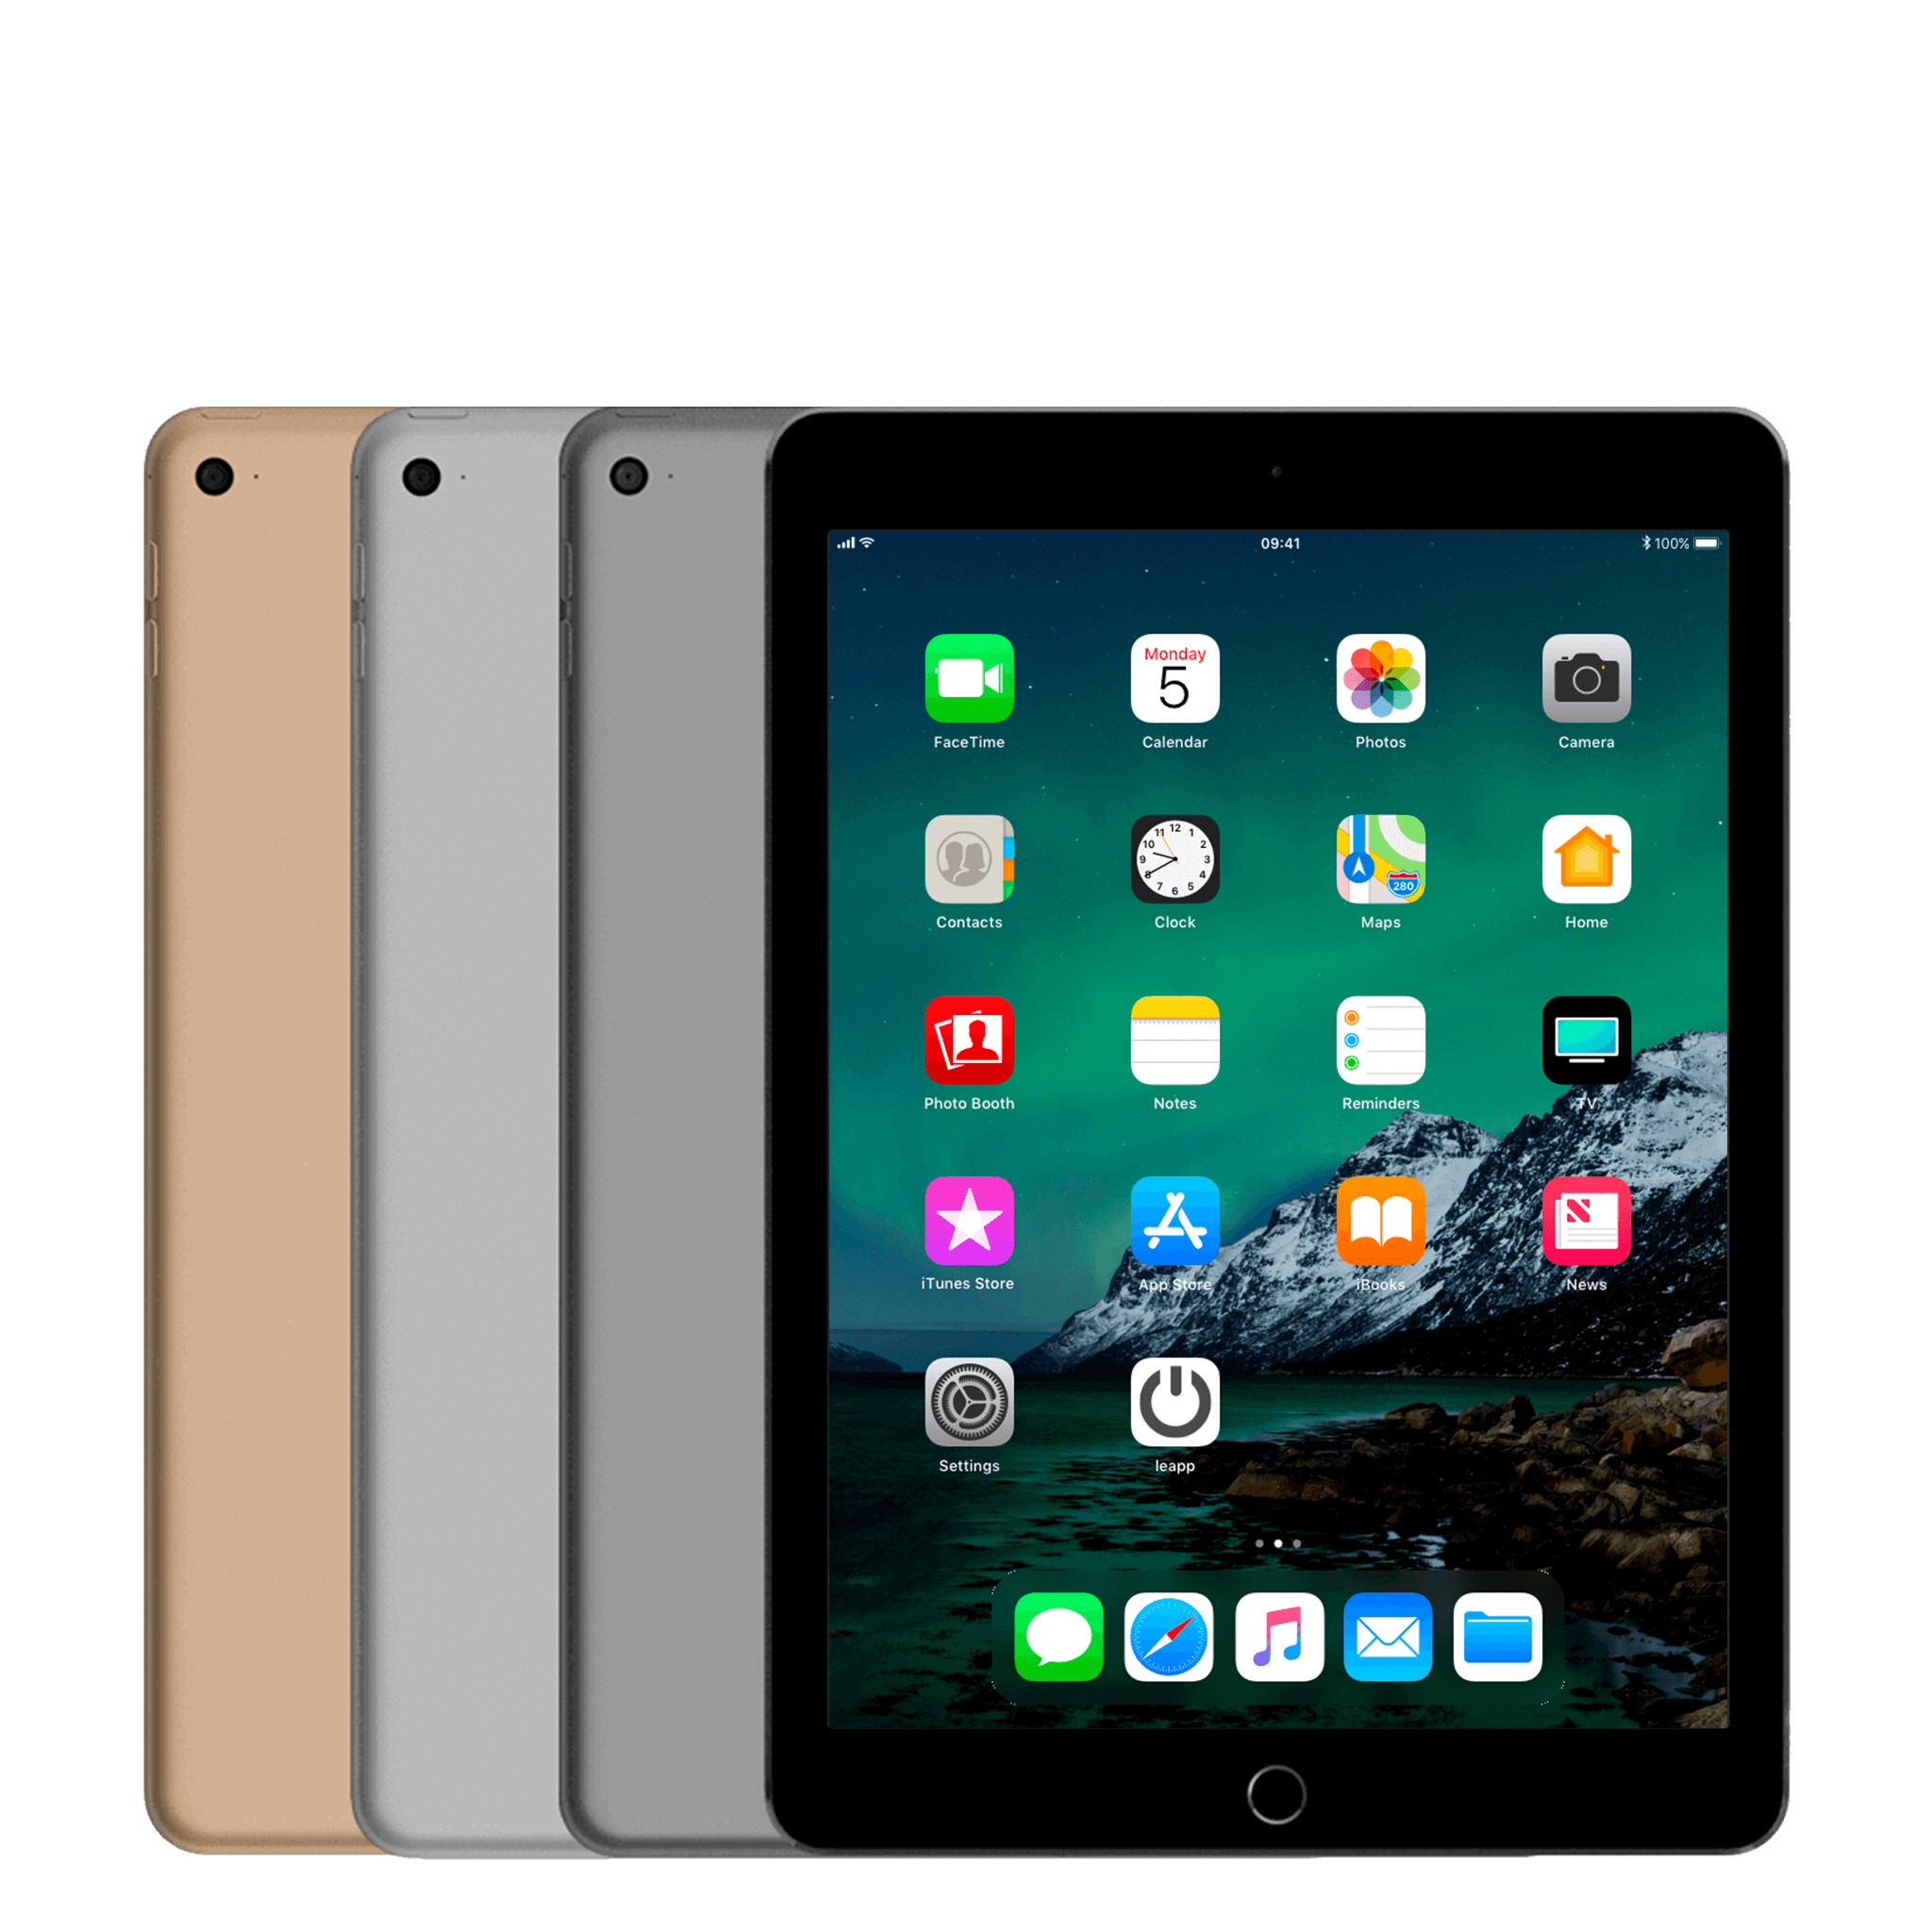 Đánh giá iPad Air 2 mới nhất Thiết kế sang trọng, hiệu năng ấn tượng